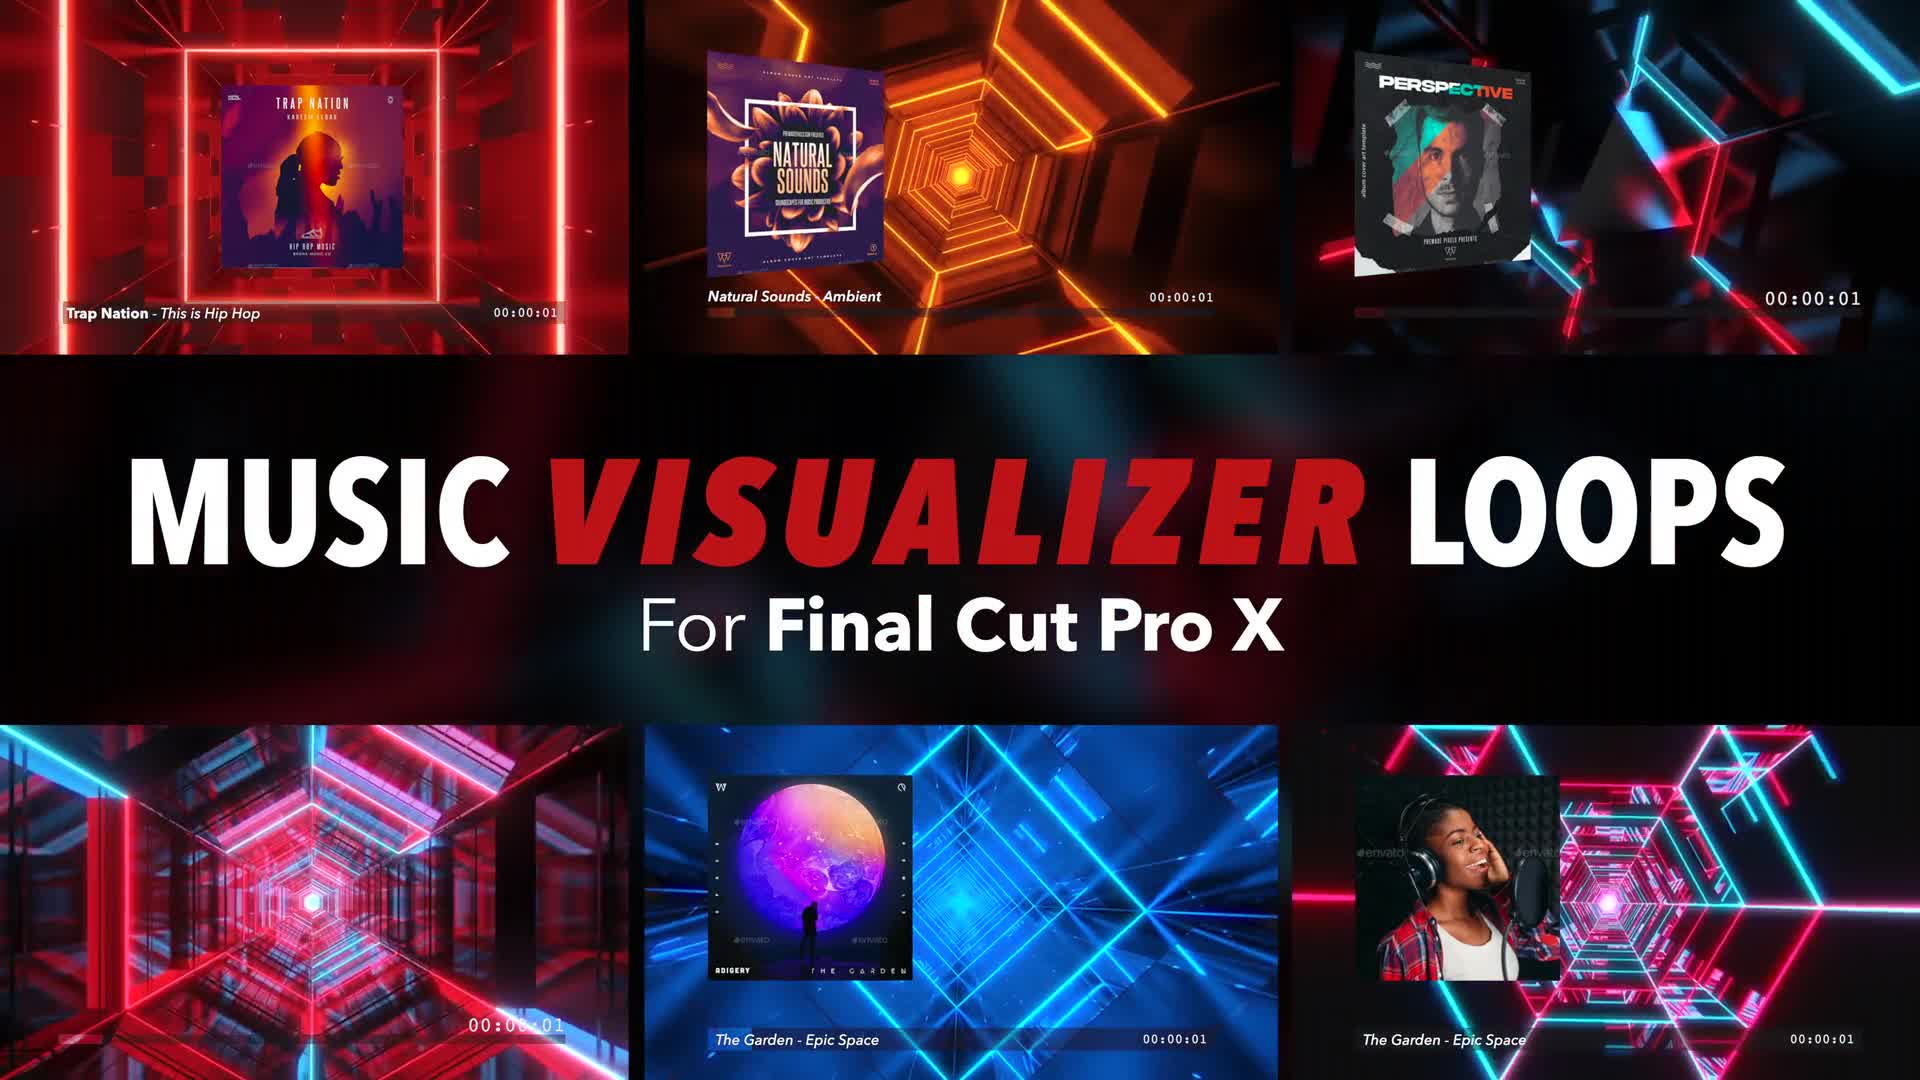 final cut pro x audio visualizer free